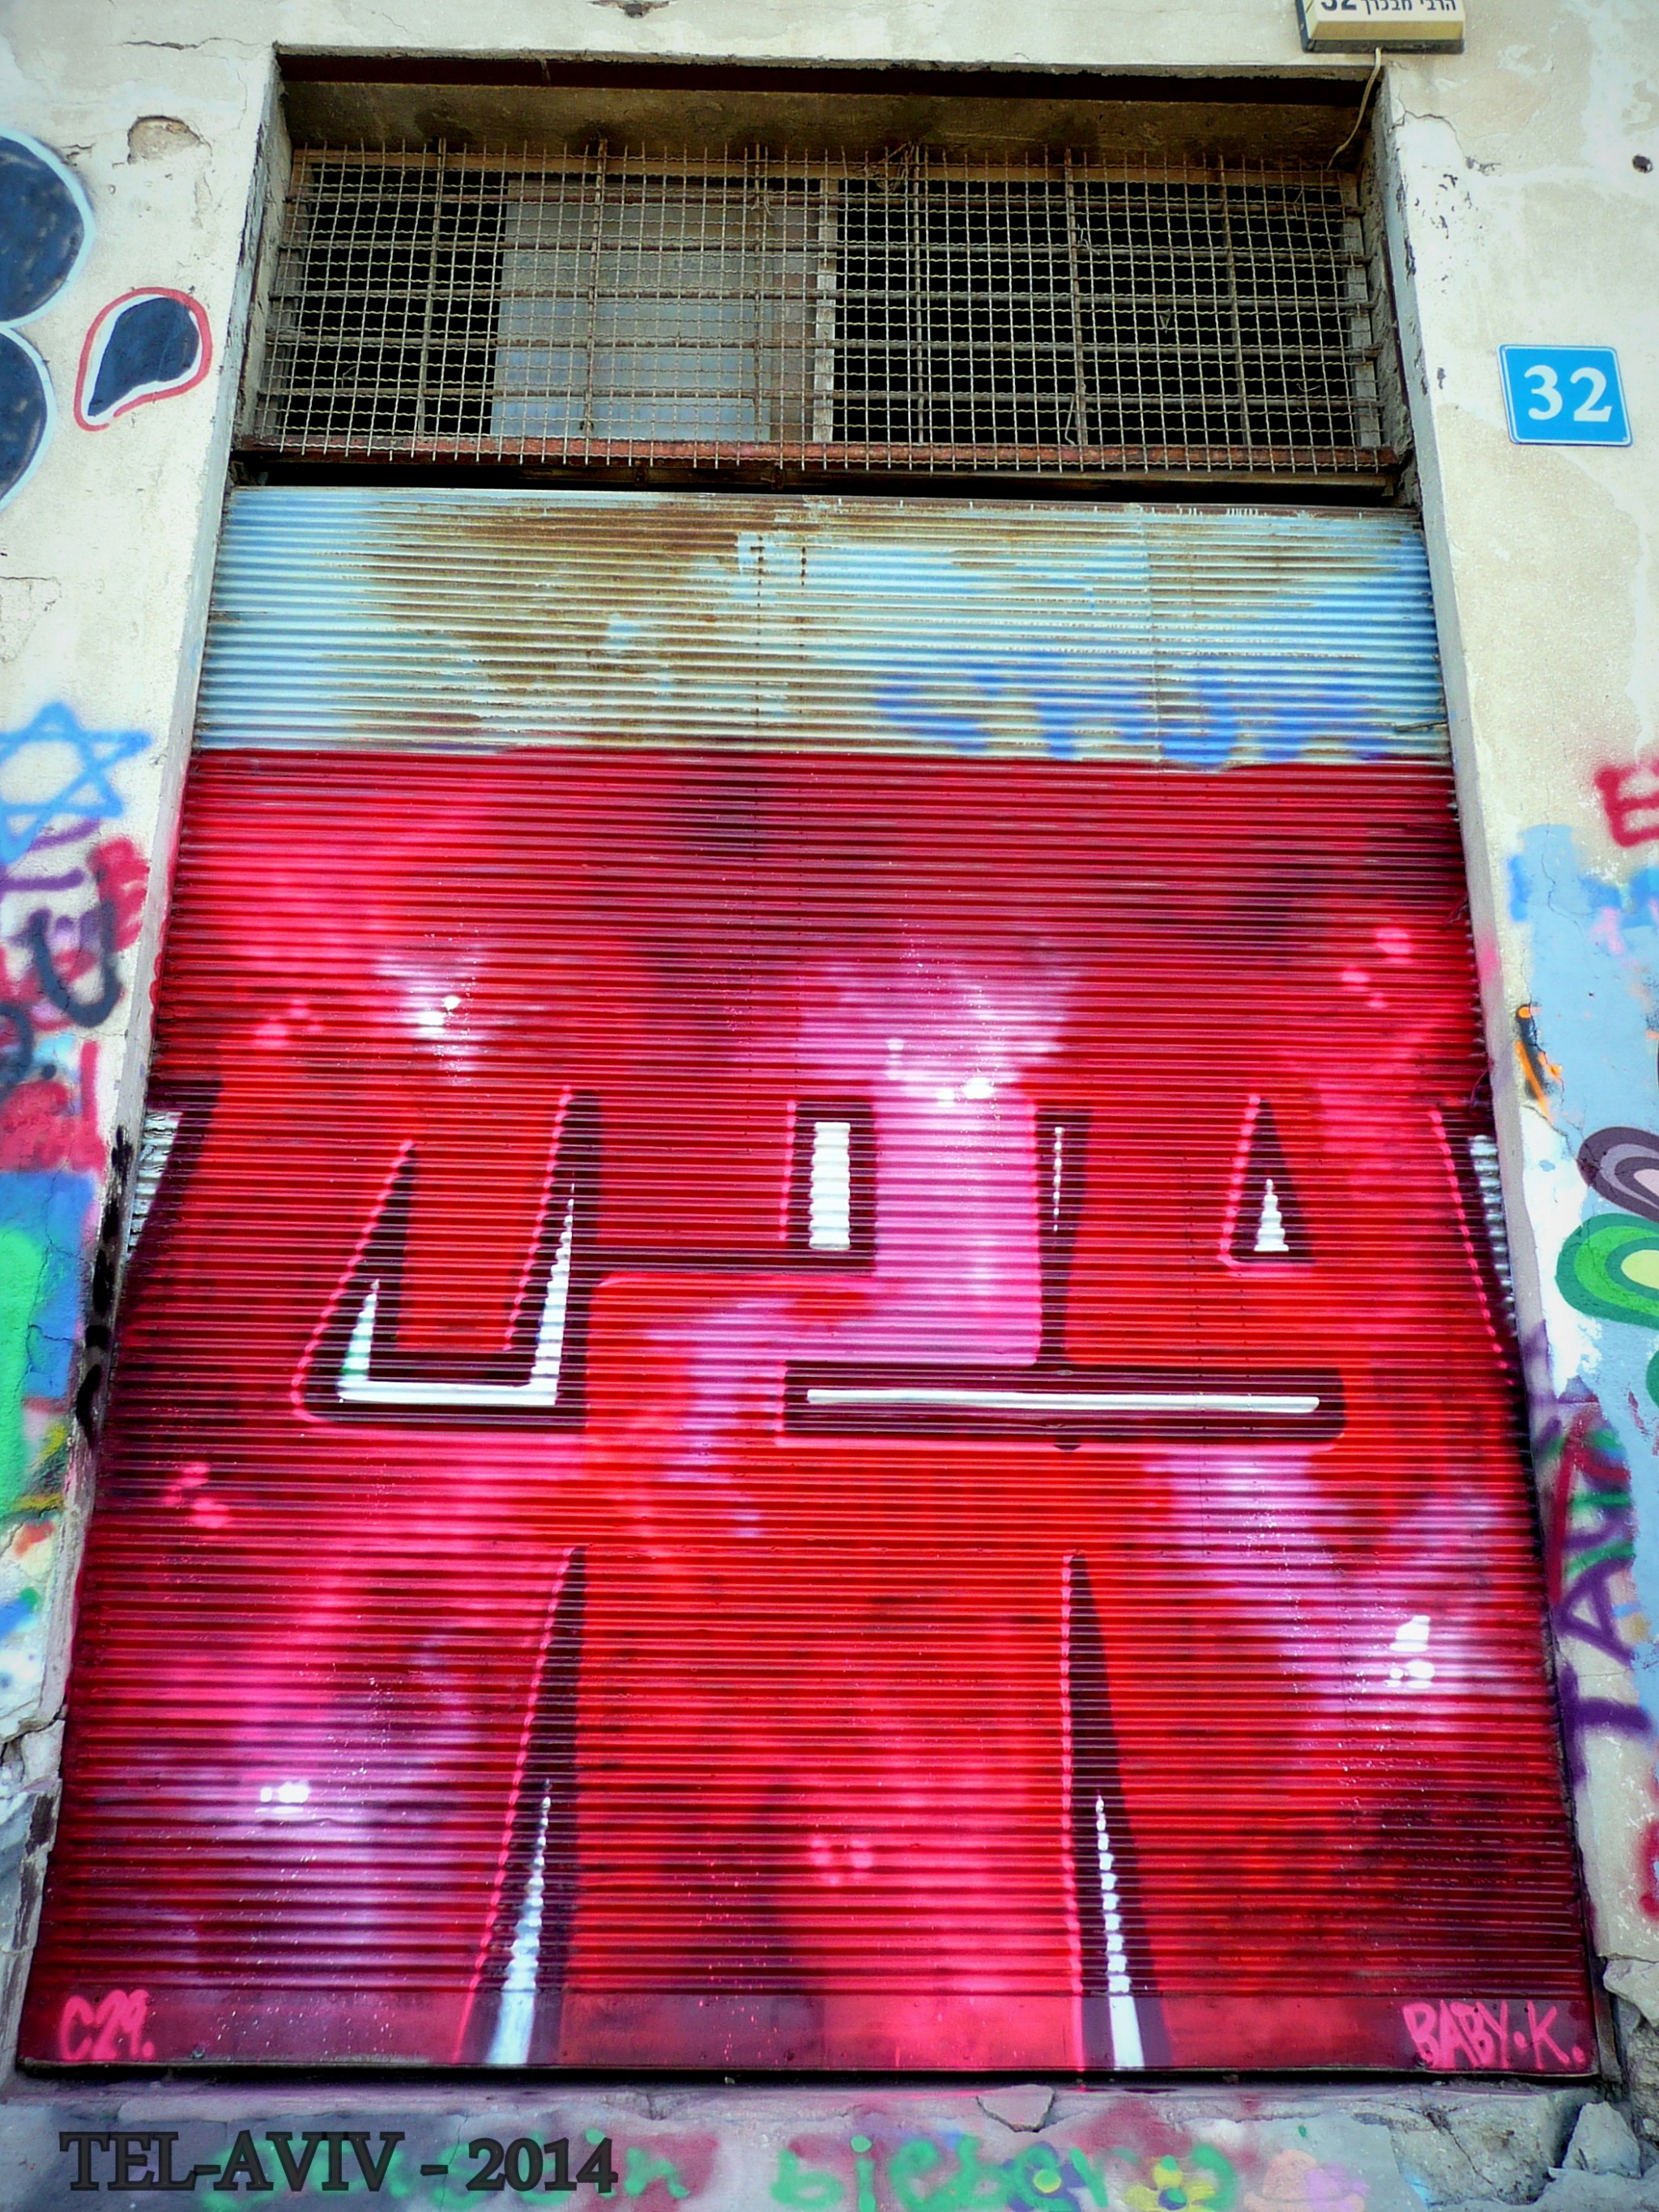 Street art - rideaux de fer, C29.Tel-aviv 2014